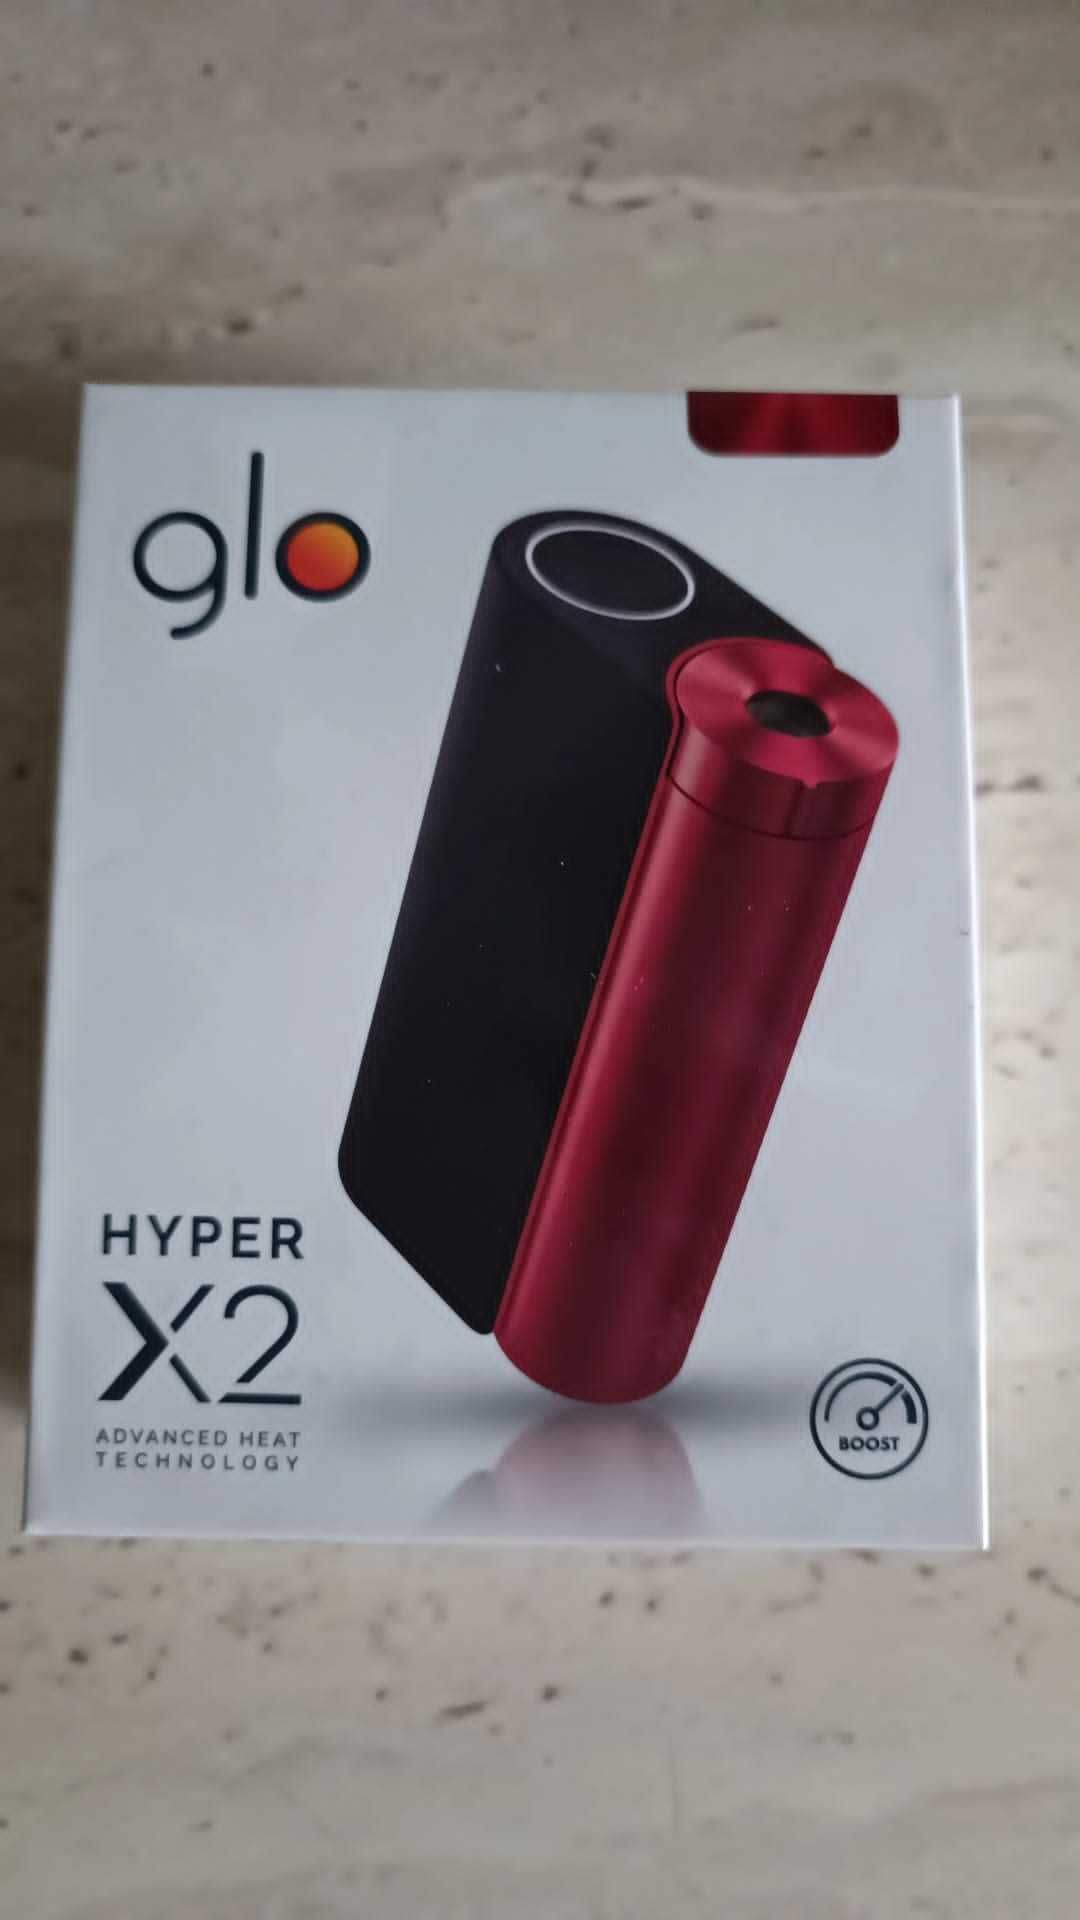 Device glo™ hyper X2